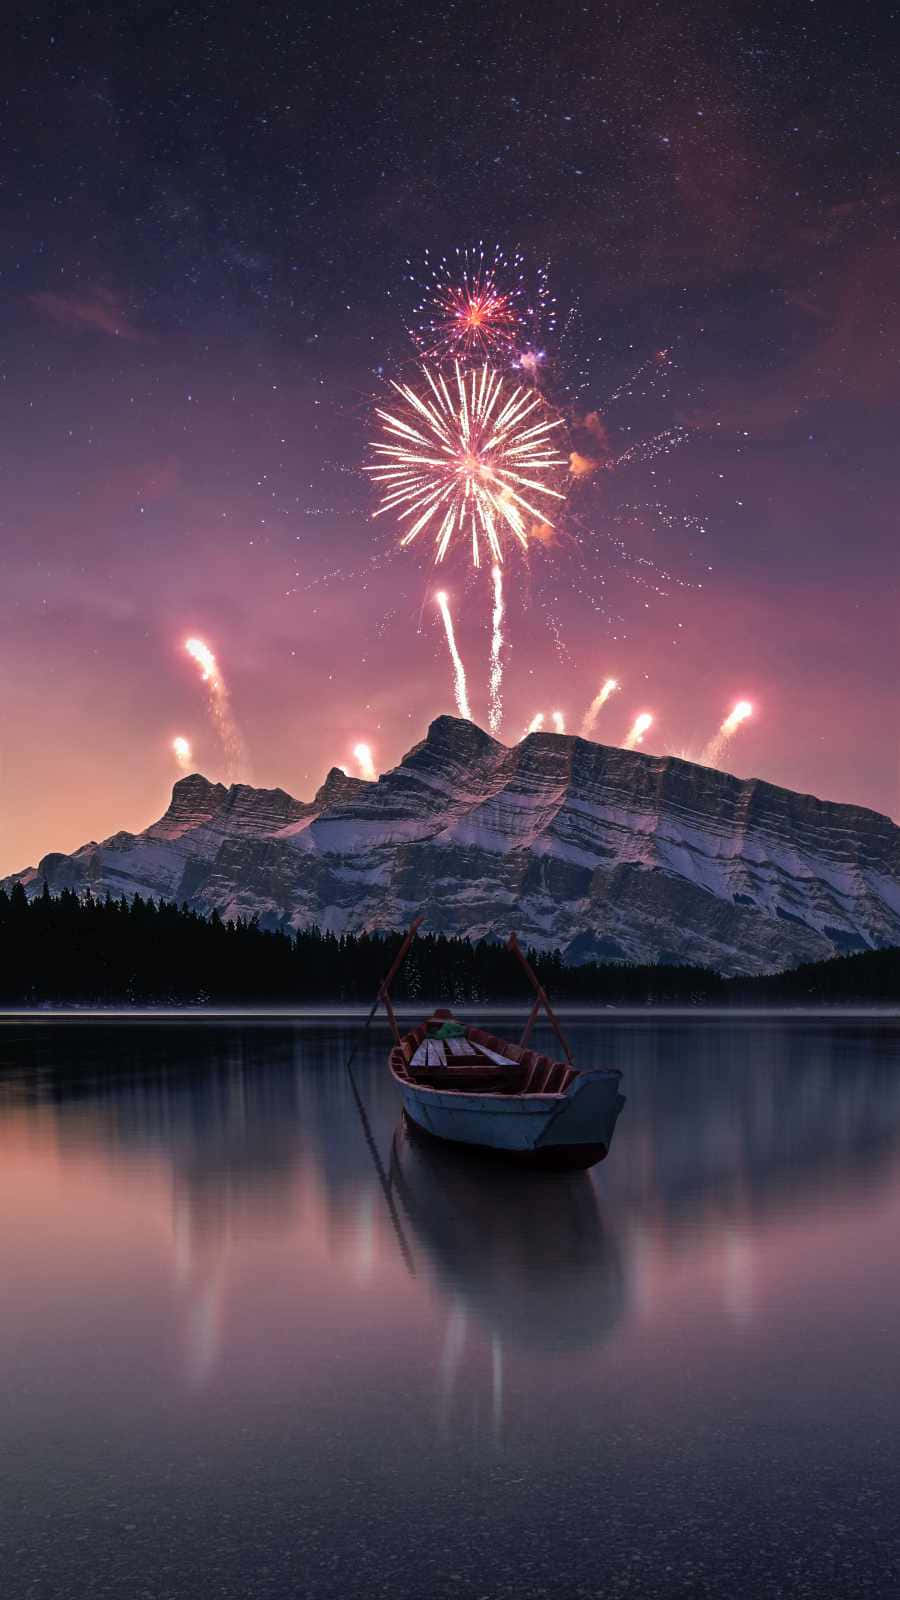 Immaginedi Un Lago Con Una Barca E Uno Spettacolo Di Fuochi D'artificio.